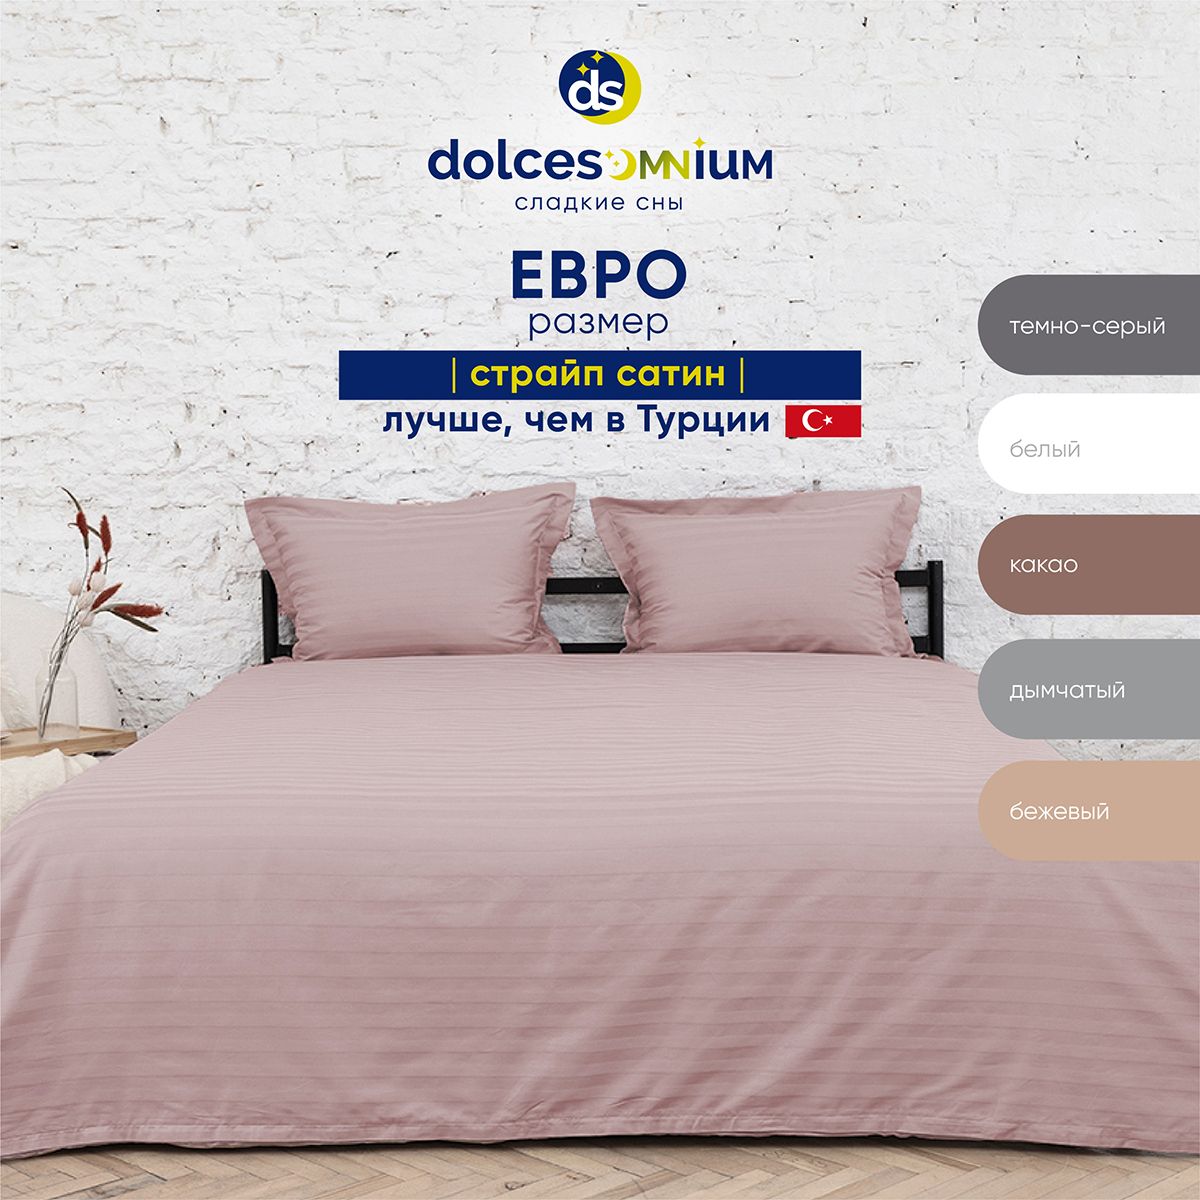 Комплект постельного белья DolceSomnium евро 817/0031668\3421